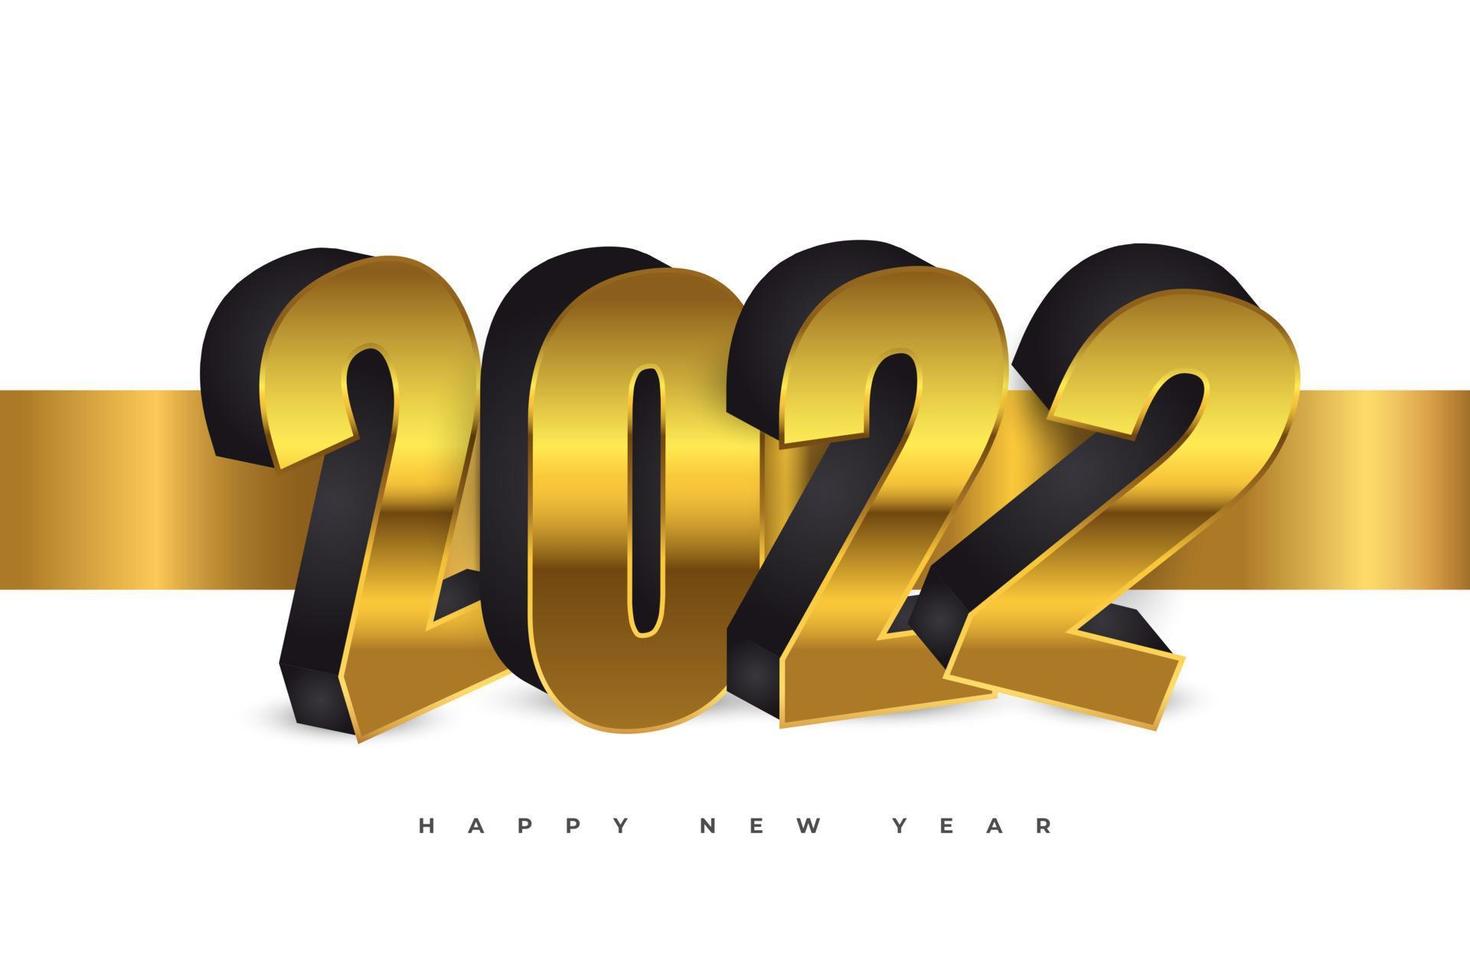 gott nytt år 2022 banner eller affischdesign med 3d lyxnummer i svart och guld stil. nyårsfirande designmall för flygblad, affisch, broschyr, kort, banderoll eller vykort vektor